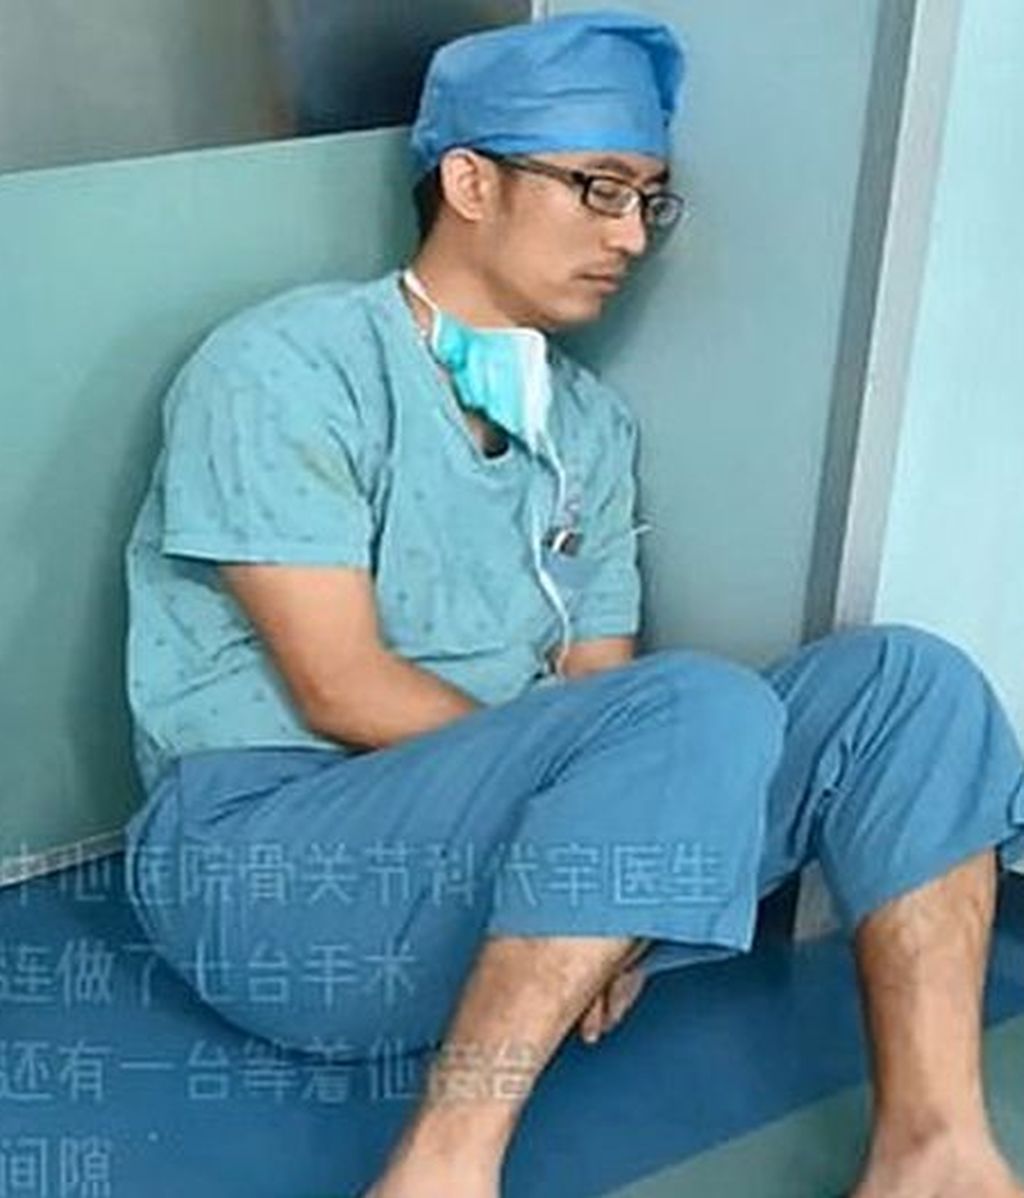 Cirujano durmiendo sentado en el suelo de un hospital